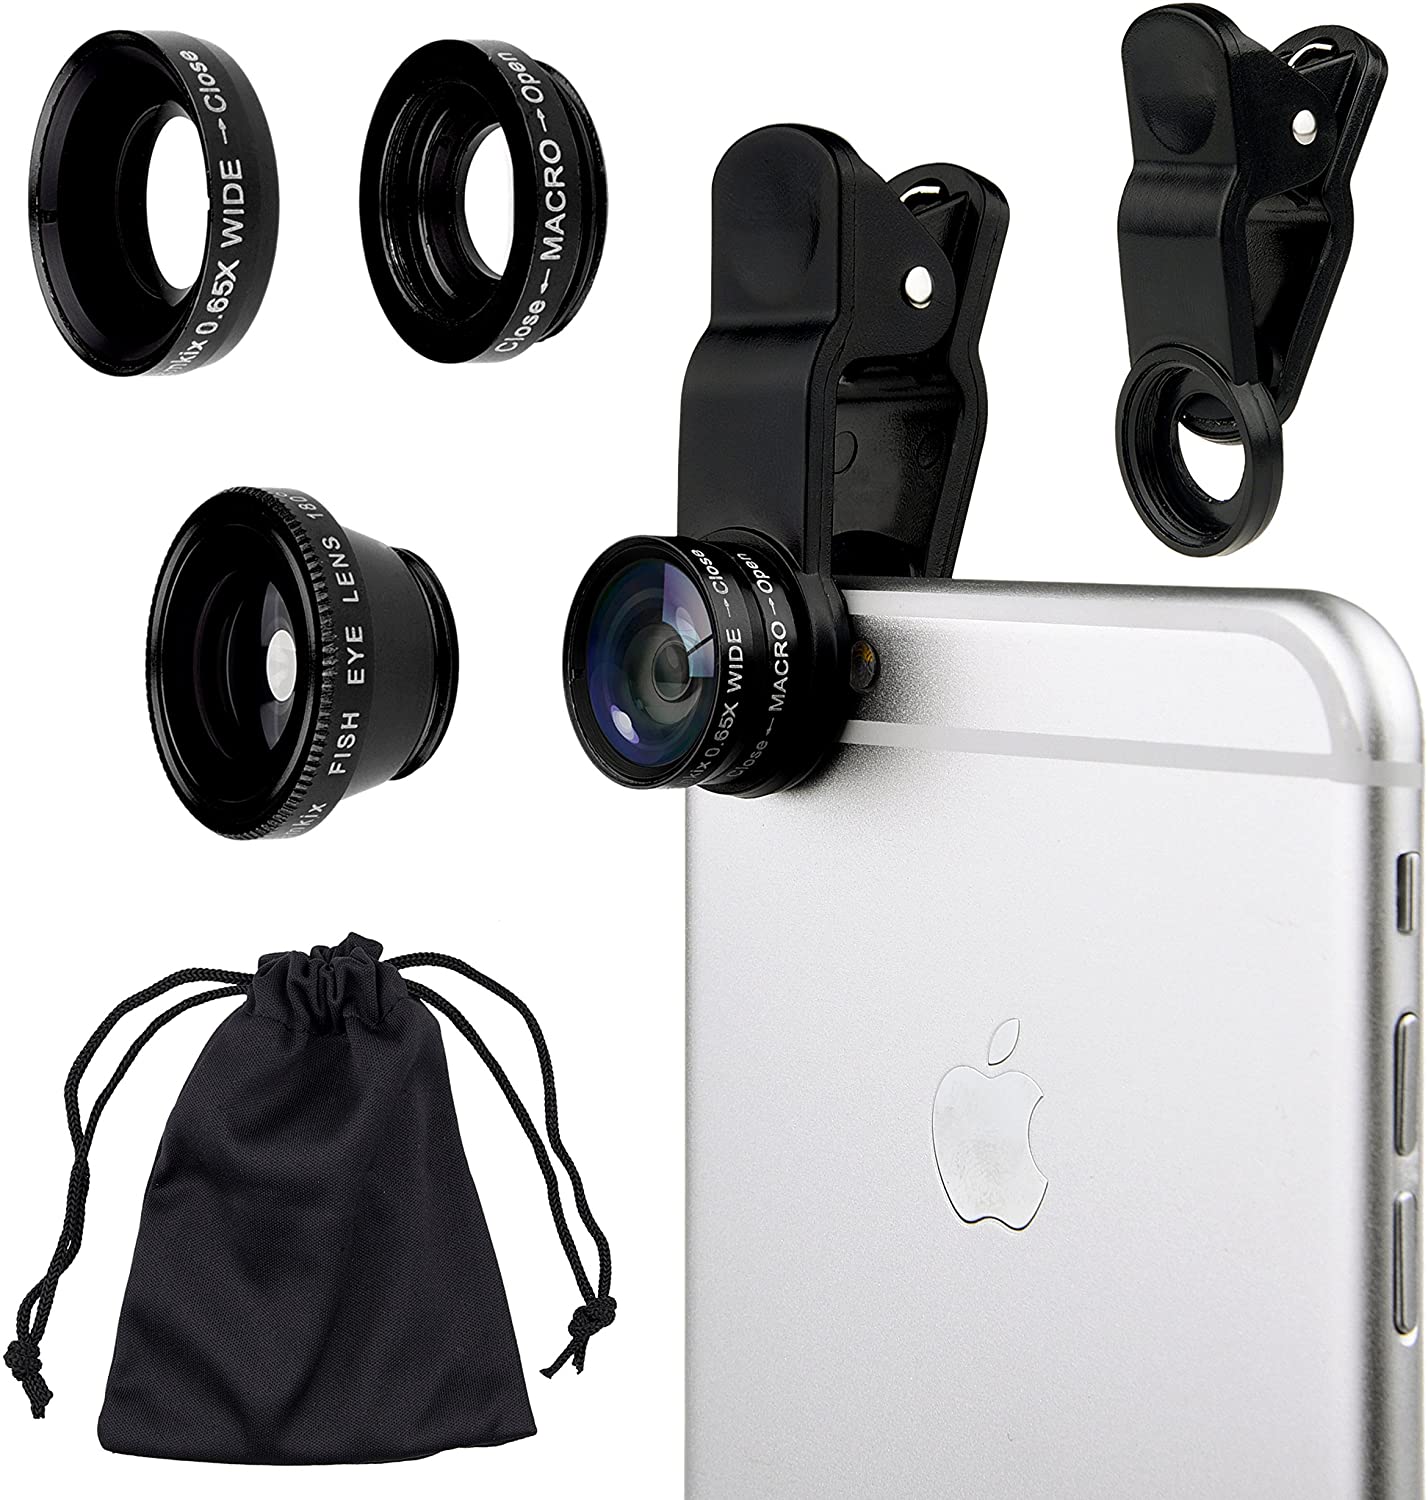 Bộ ống kính Lens máy ảnh điện thoại di động Camkix Universal 3 in 1